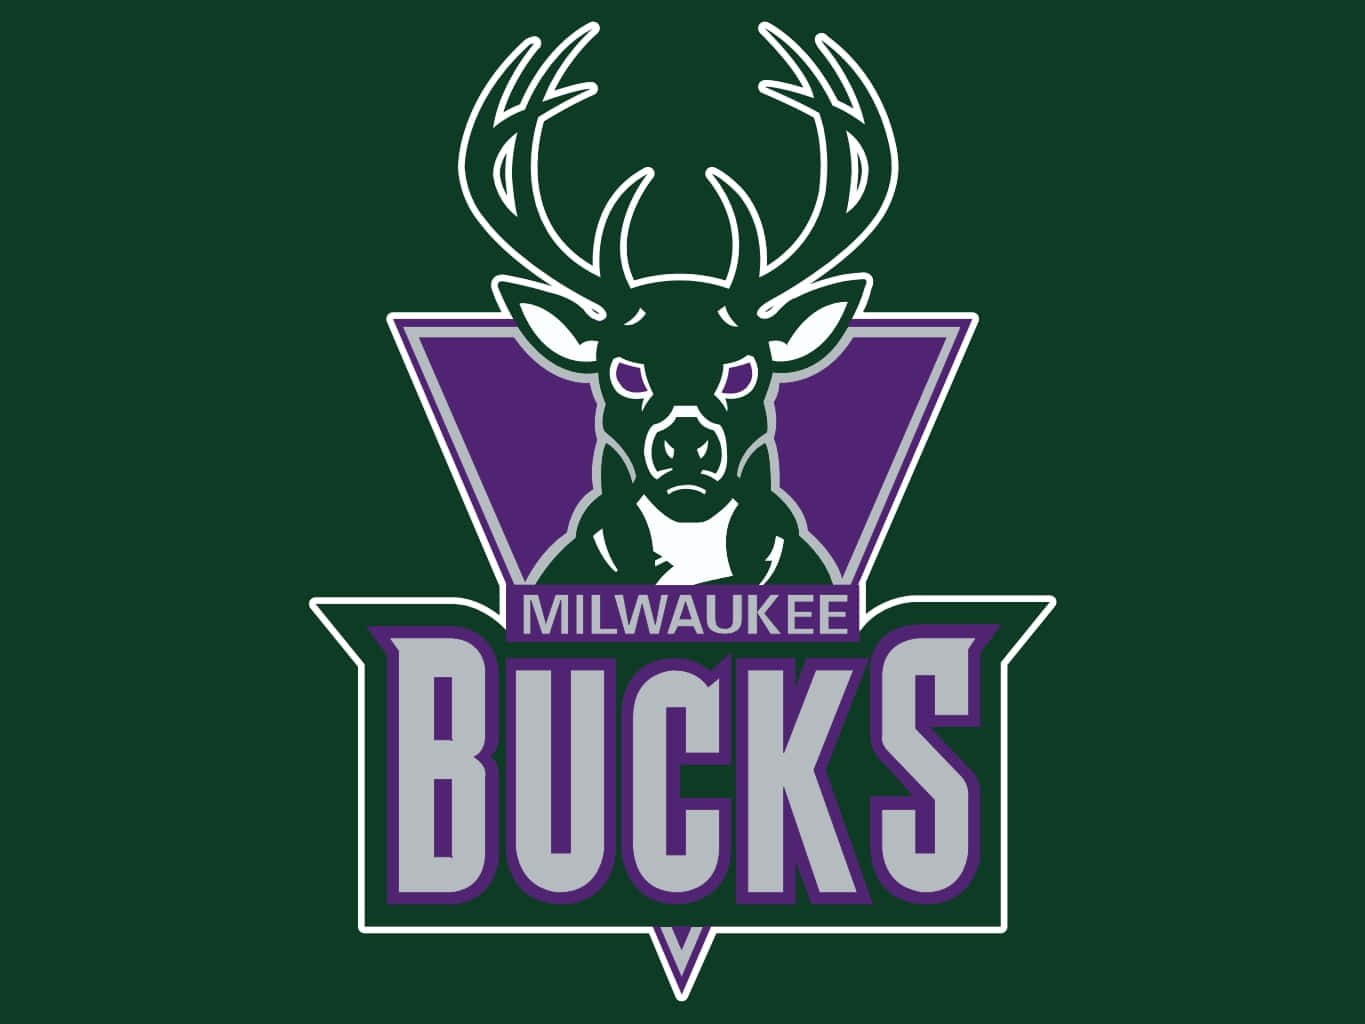 Ellogotipo De Los Milwaukee Bucks Que Representa A La Ciudad De Milwaukee Fondo de pantalla